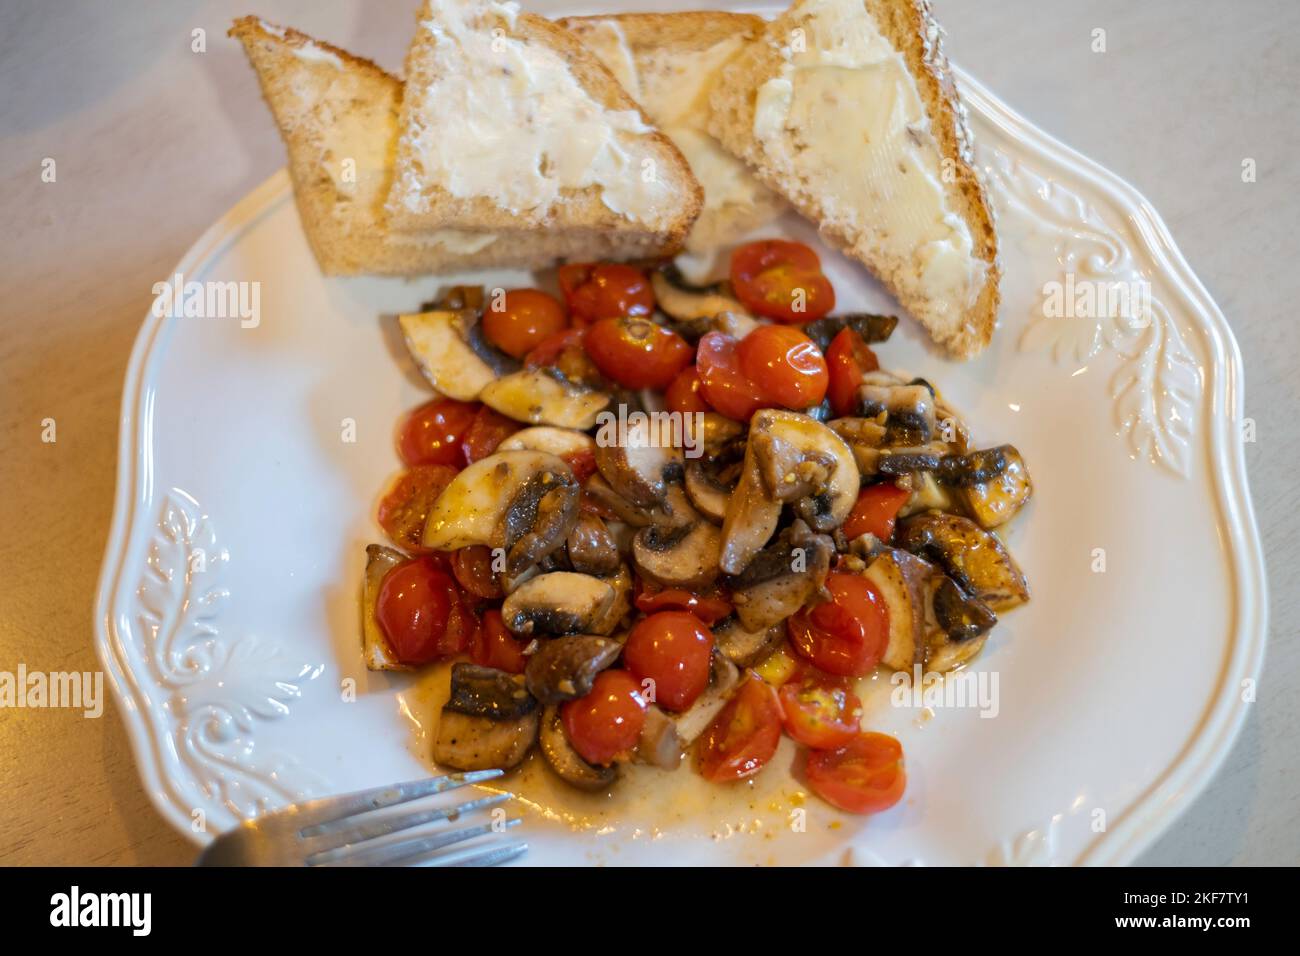 Gesundes Gemüseessen mit Pilzen, Kirschtomaten und Knoblauch, gebraten oder sautiert und auf einem weißen Teller mit Brot und Butter serviert. Stockfoto